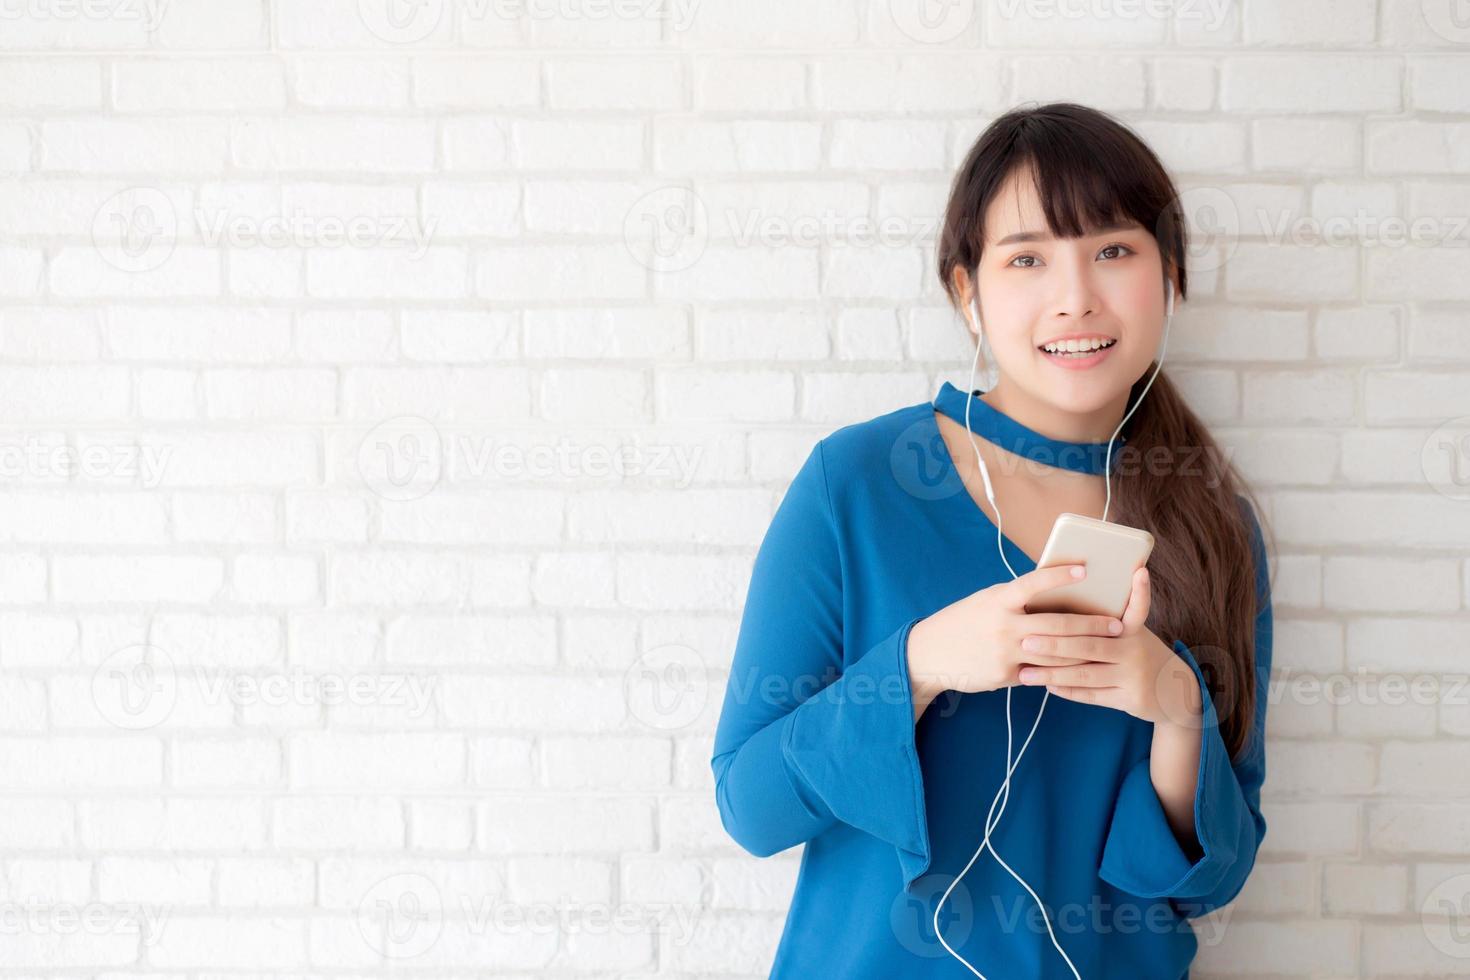 schöne asiatische junge frau des porträts, die glücklich steht, genießen und spaß hören musik mit kopfhörer auf zementbetonhintergrund, lebensstil des mädchens entspannen sound radio mit kopfhörer, technologiekonzept. foto